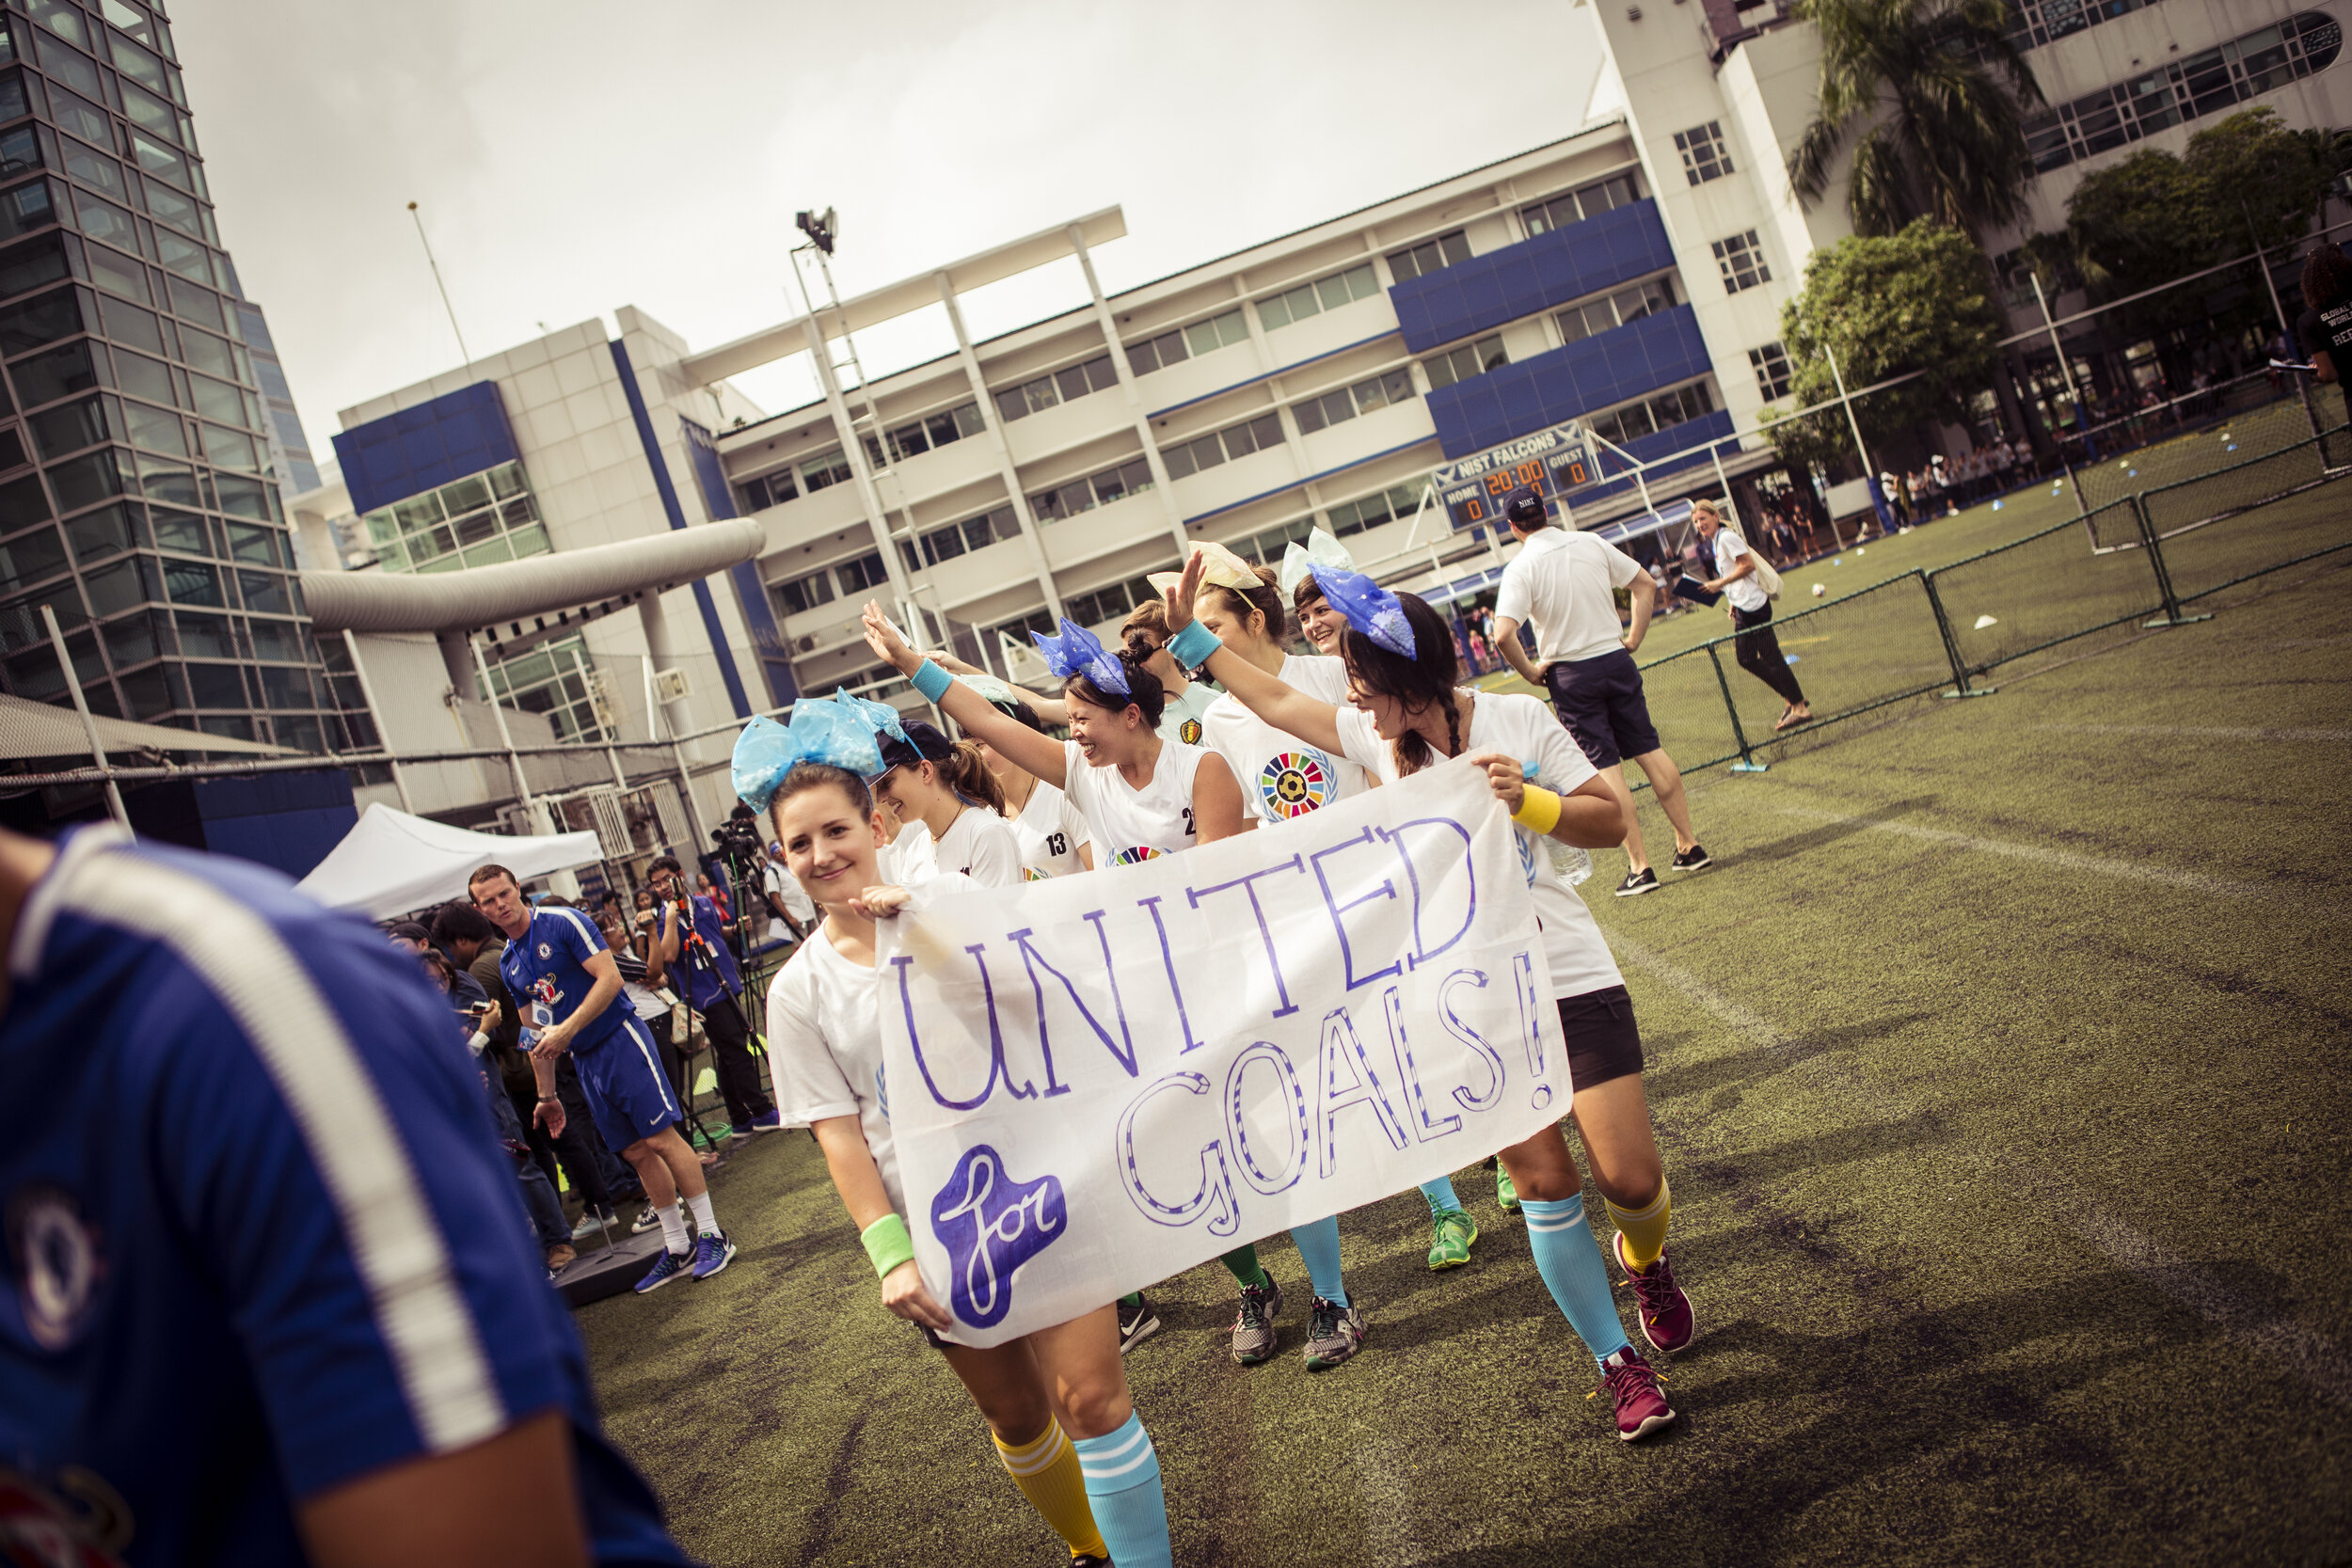 Team United for Goals - SDG 17